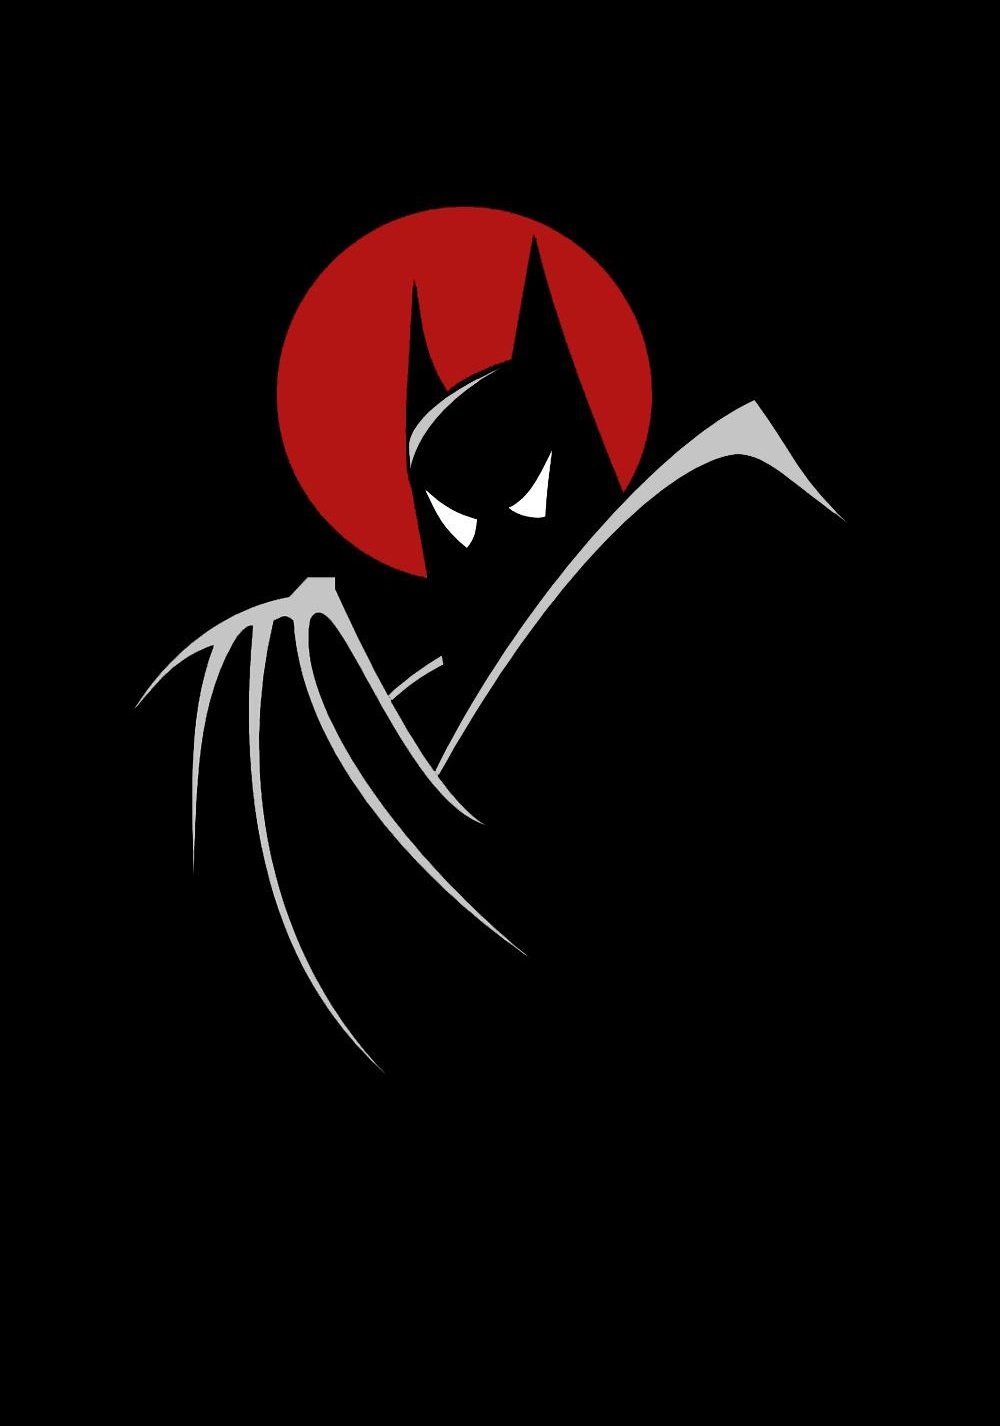 蝙蝠侠:动画版 第一季 剧照2